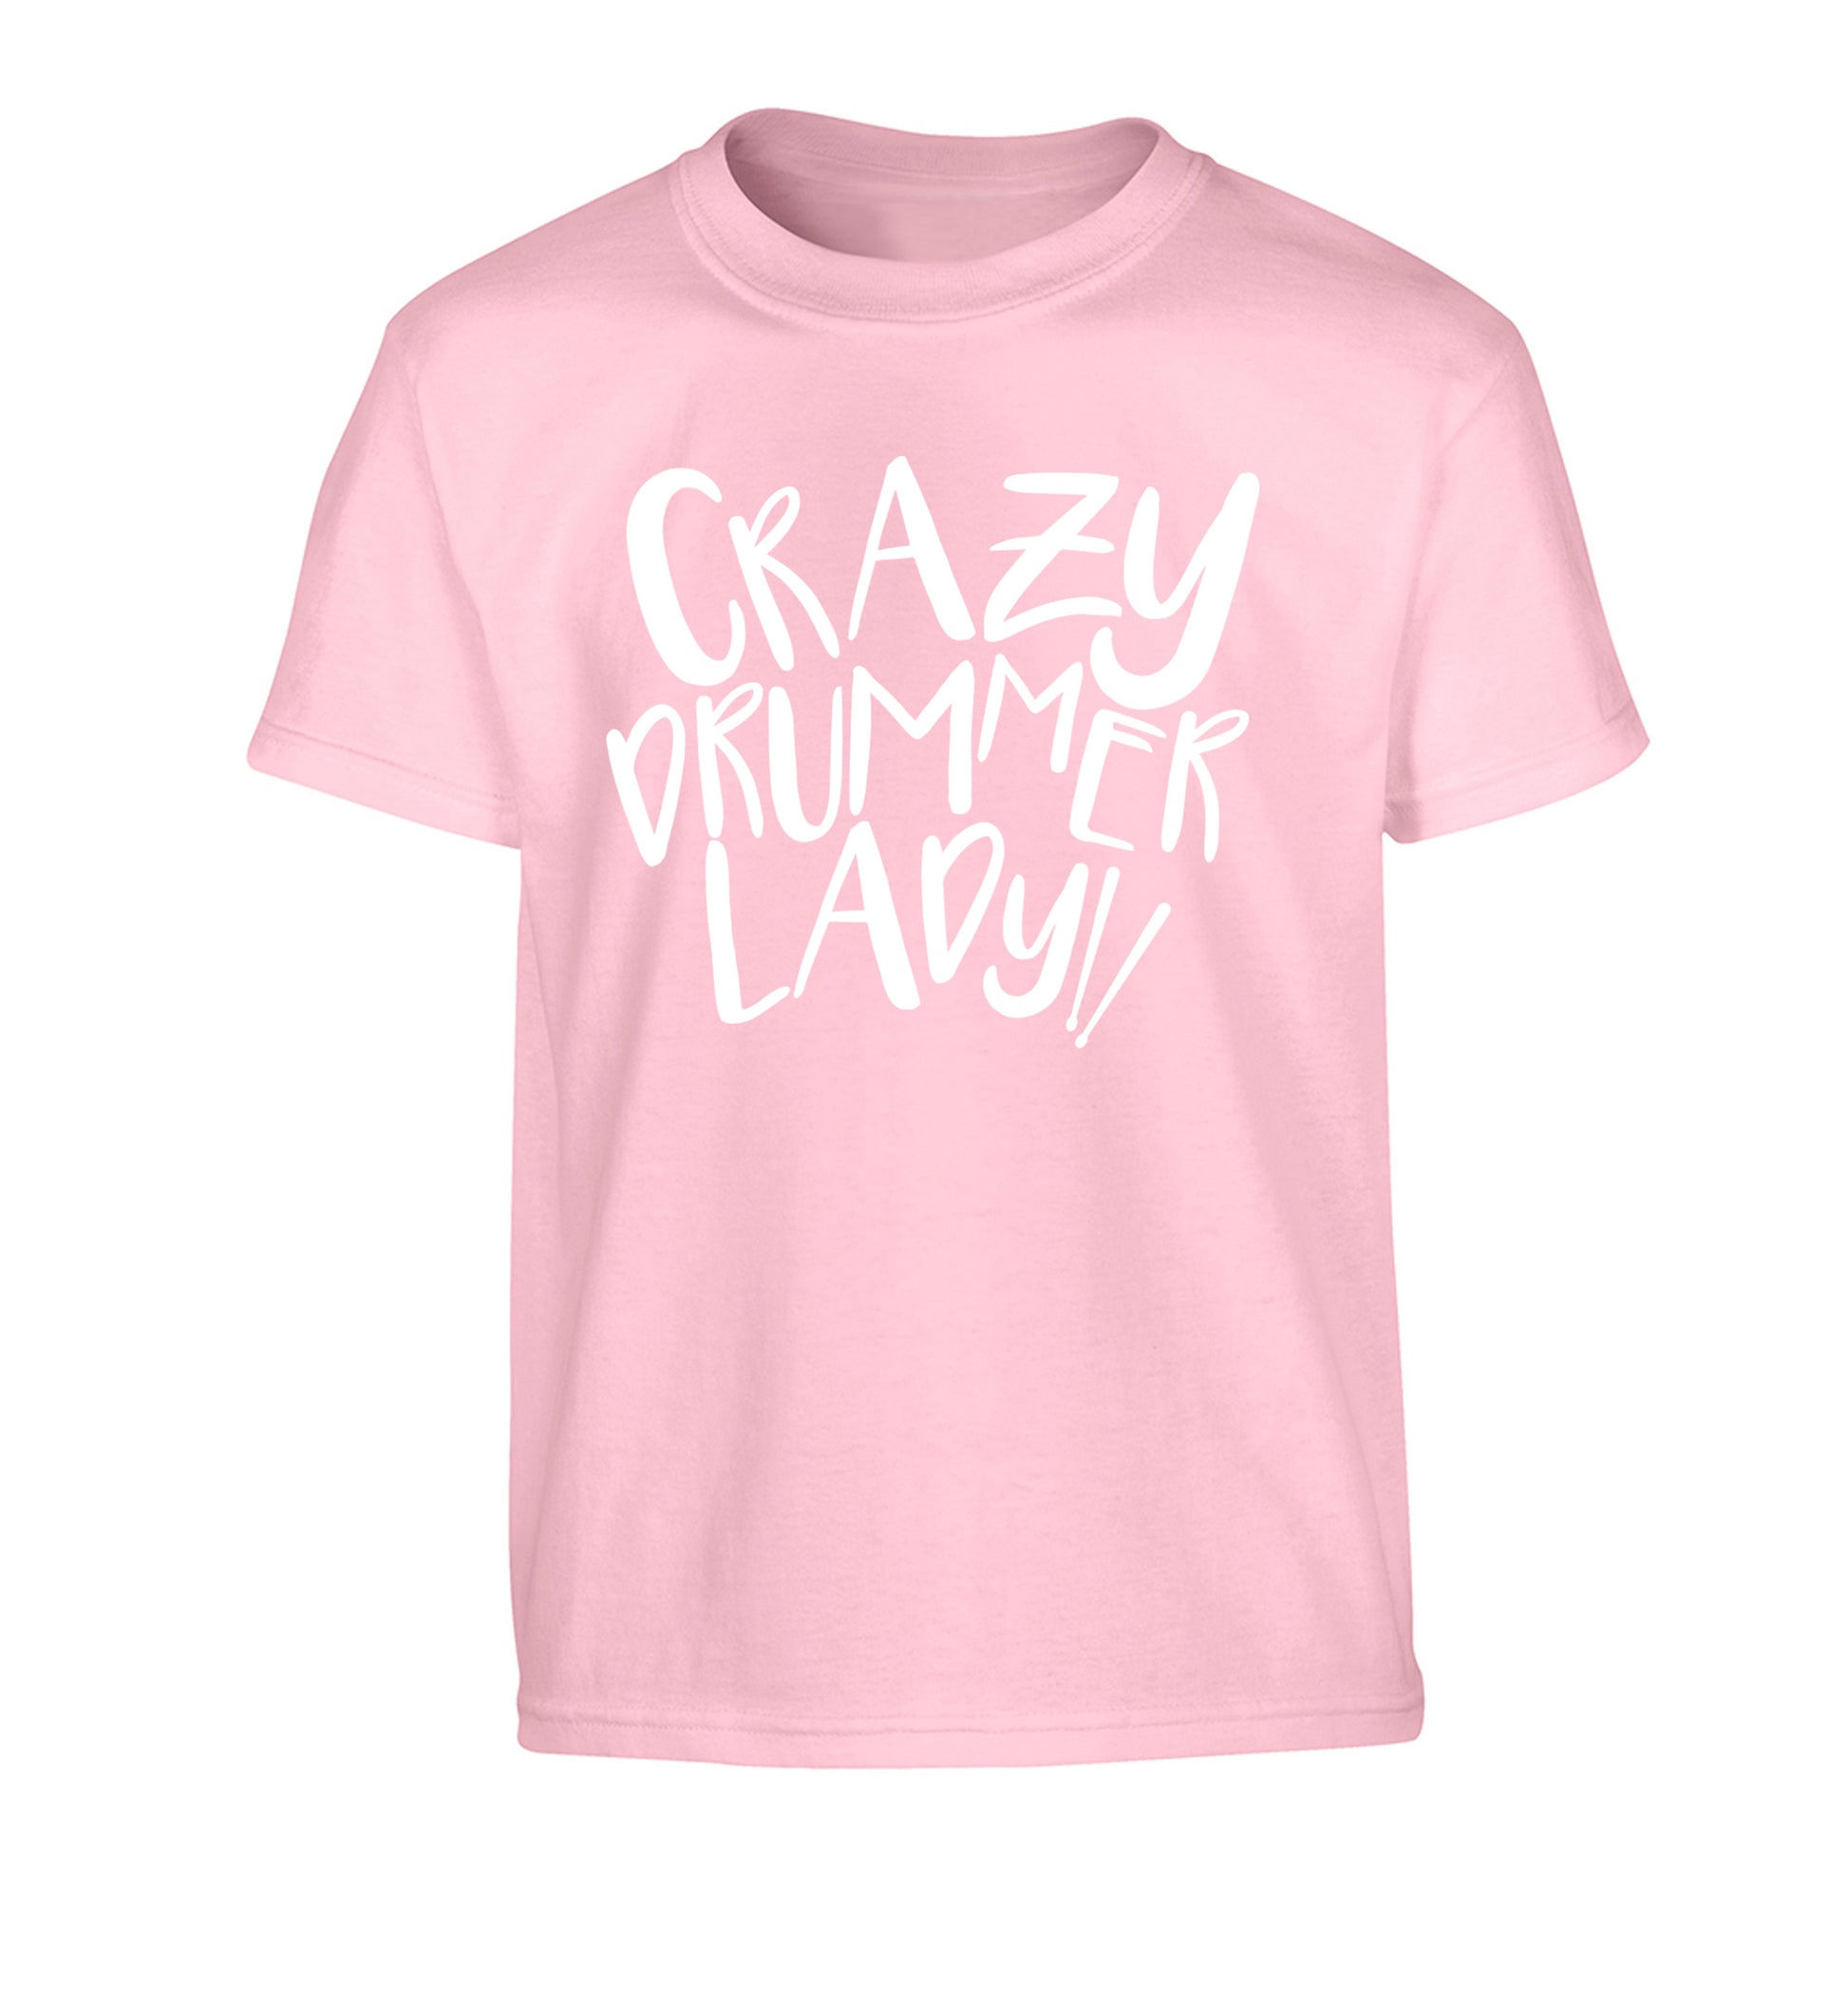 Crazy drummer lady Children's light pink Tshirt 12-14 Years